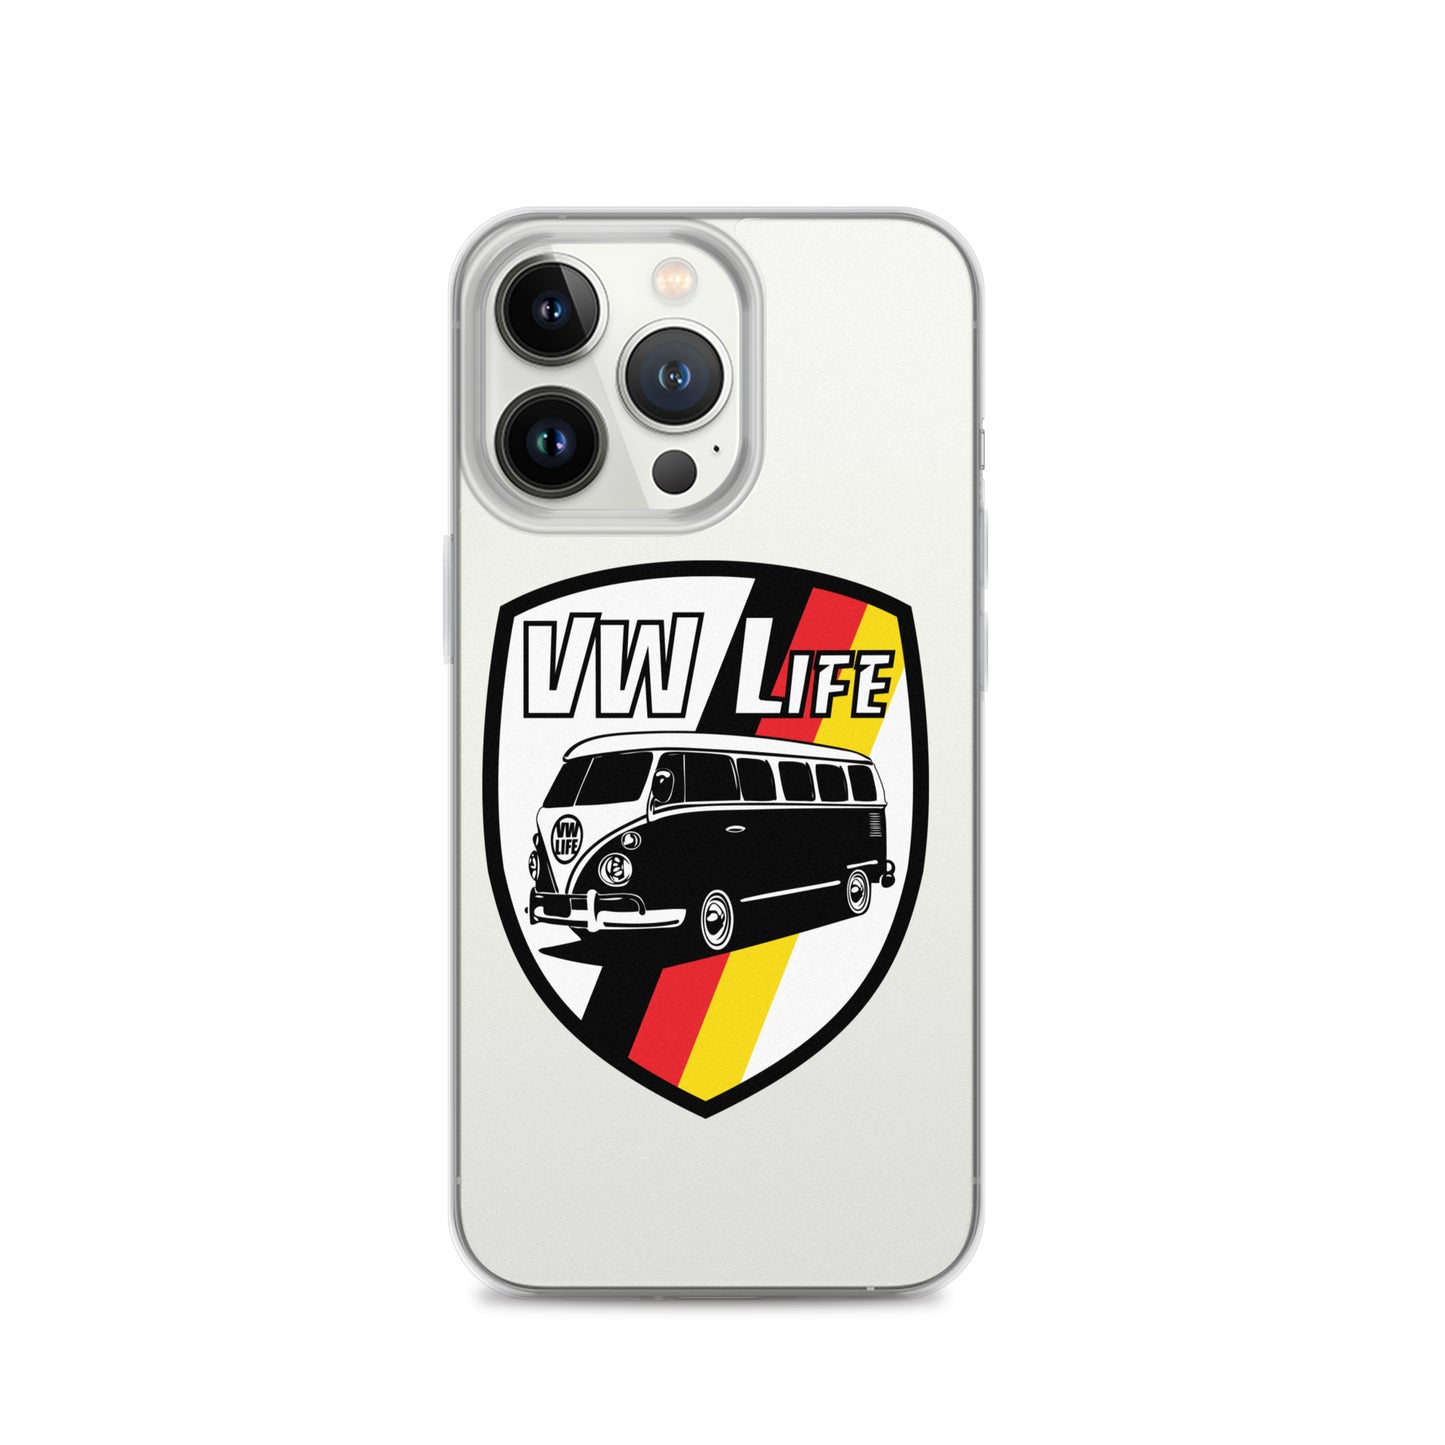 VWLife Phone case